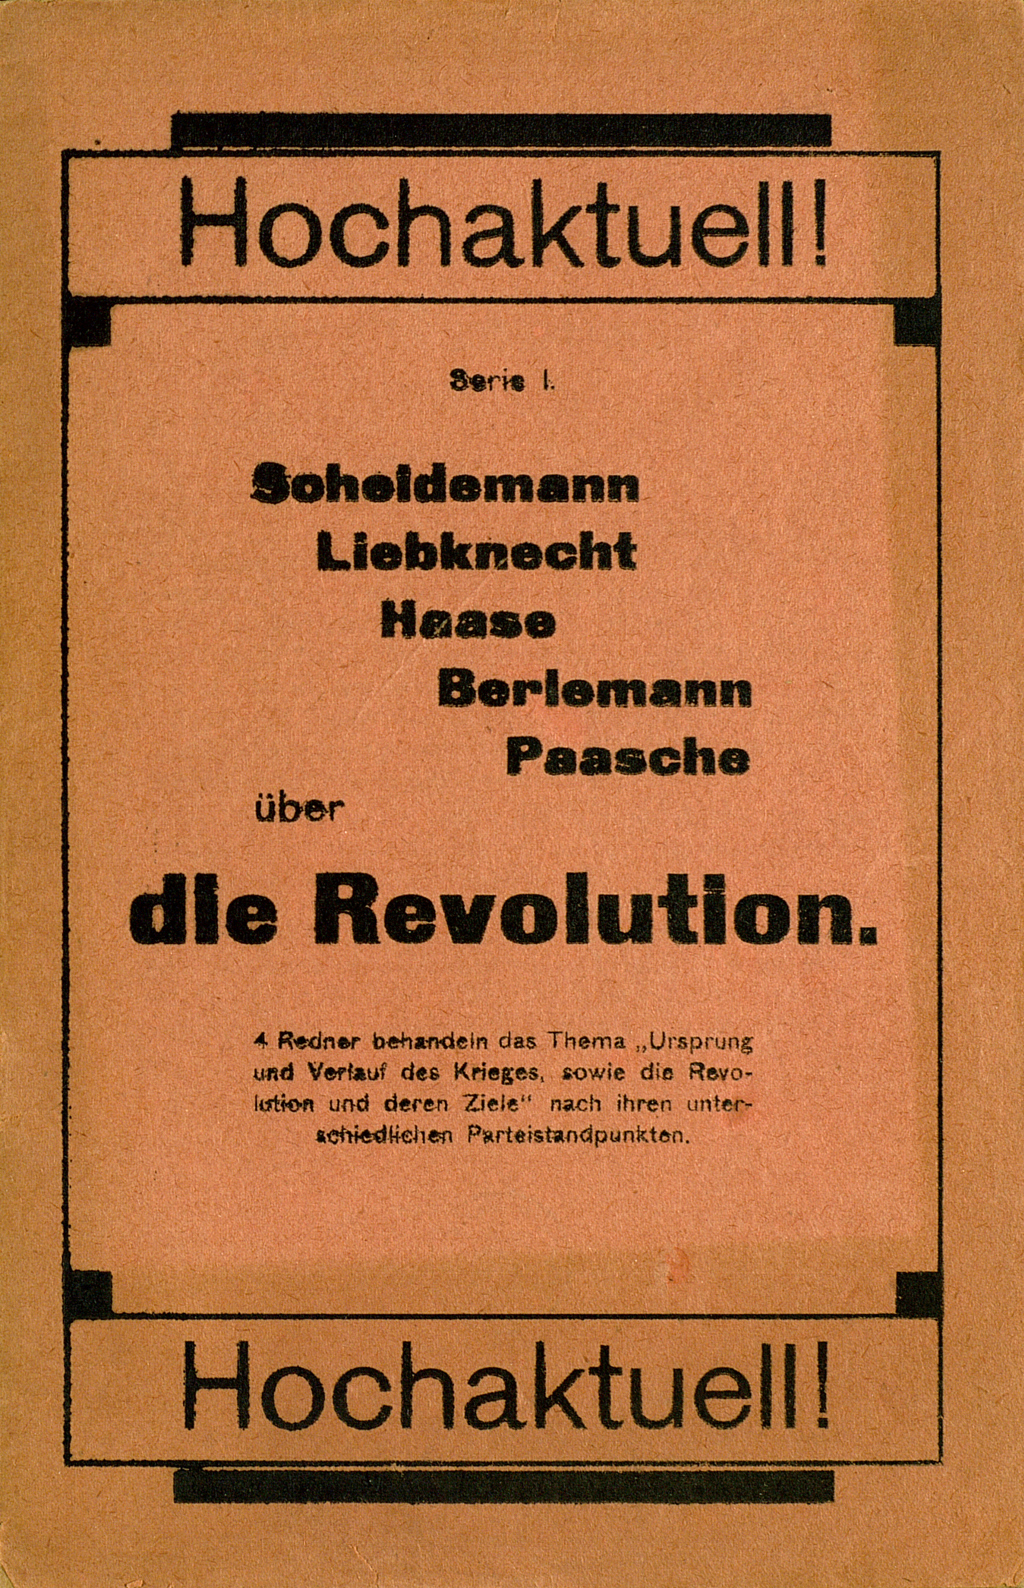 Zu sehen ist der Vorderumschlag der Broschüre mit den fünf Reden der führenden Sozialdemokraten. Der Titel der Veröffentlichung ist gerahmt; oben und unten ist jeweils in großem Schriftgrad das Wort "Hochaktuell" aufgedruckt.